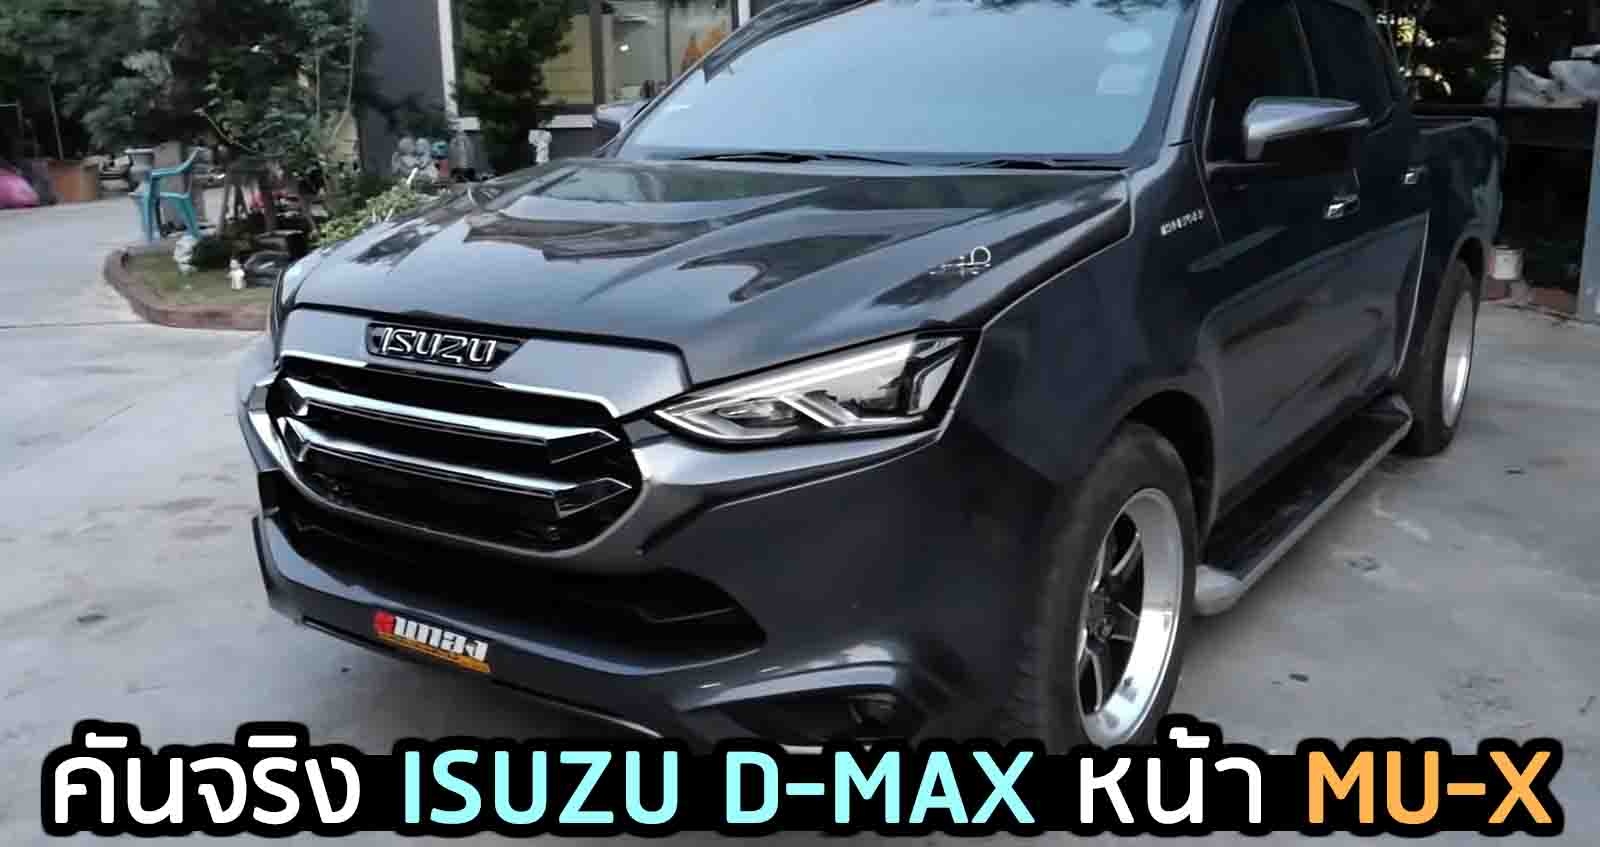 ภาพคันจริง ISUZU D-MAX หน้า MU-X ใหม่ จาก  เอ็ม ธนูทอง